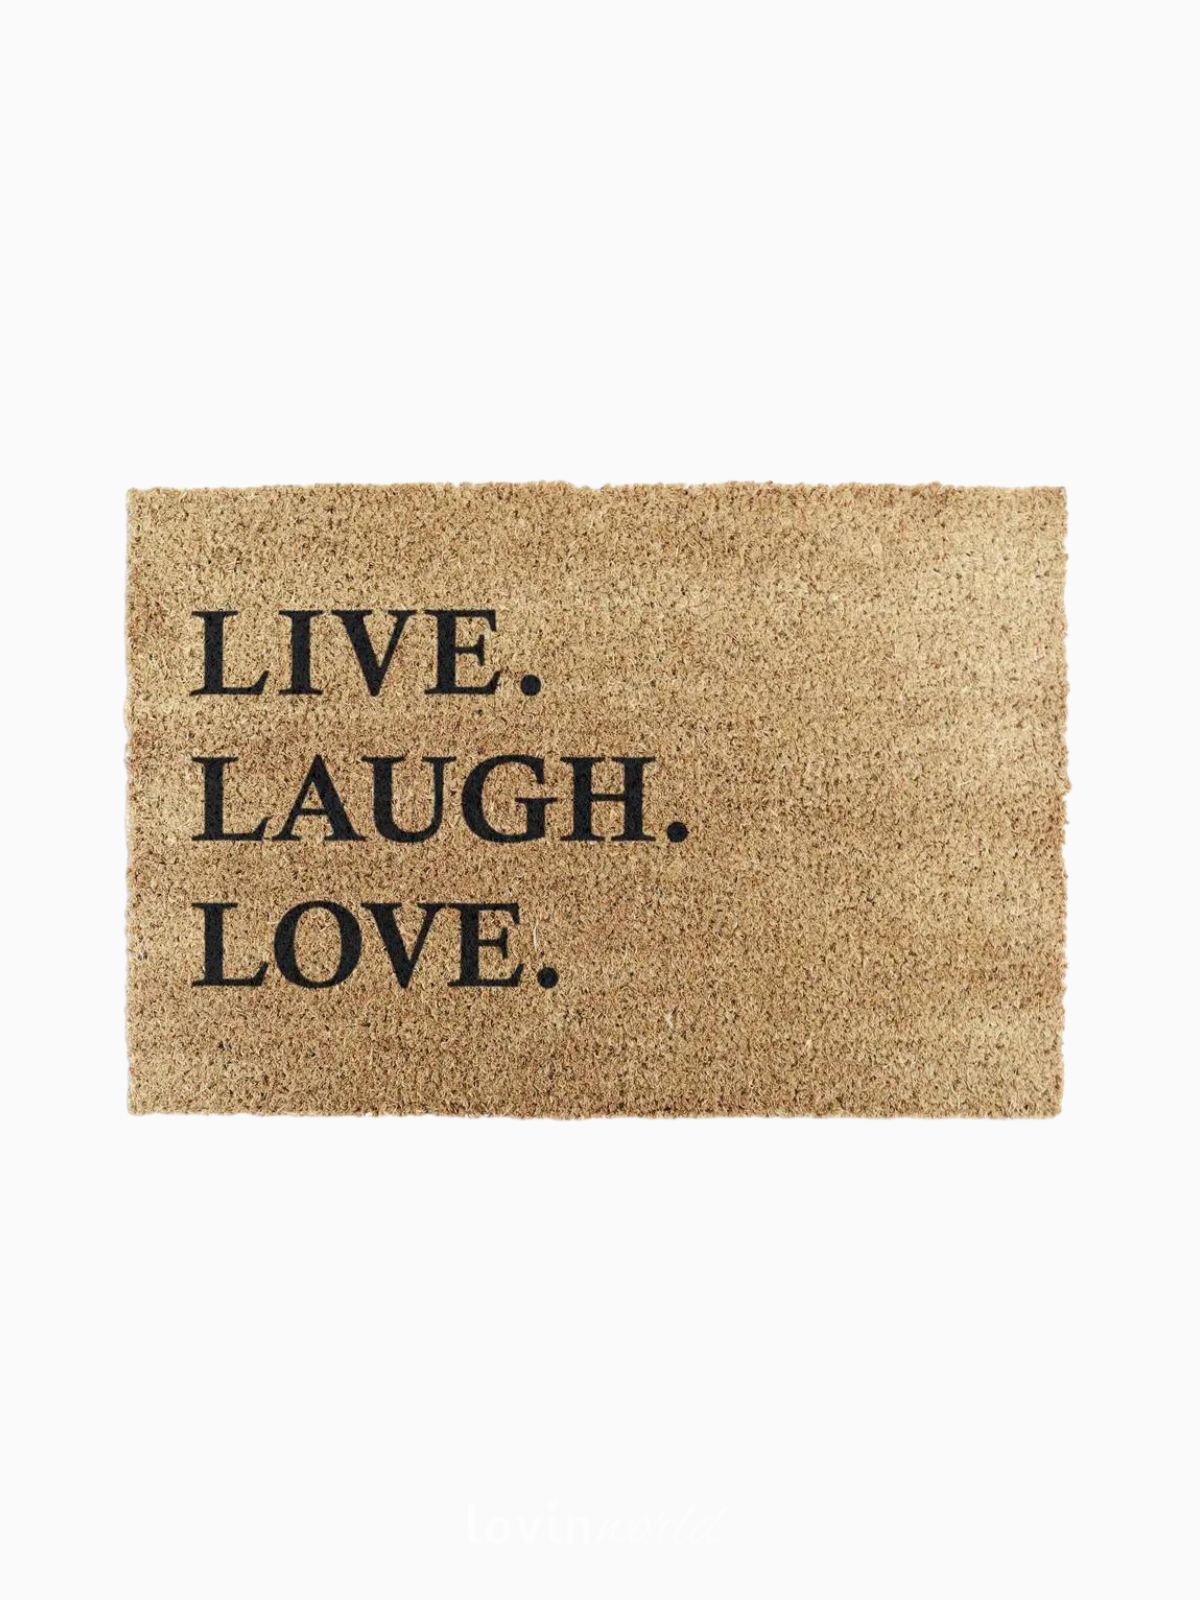 Zerbino Live Laugh Love, in fibra di cocco naturale 40x60 cm.-1